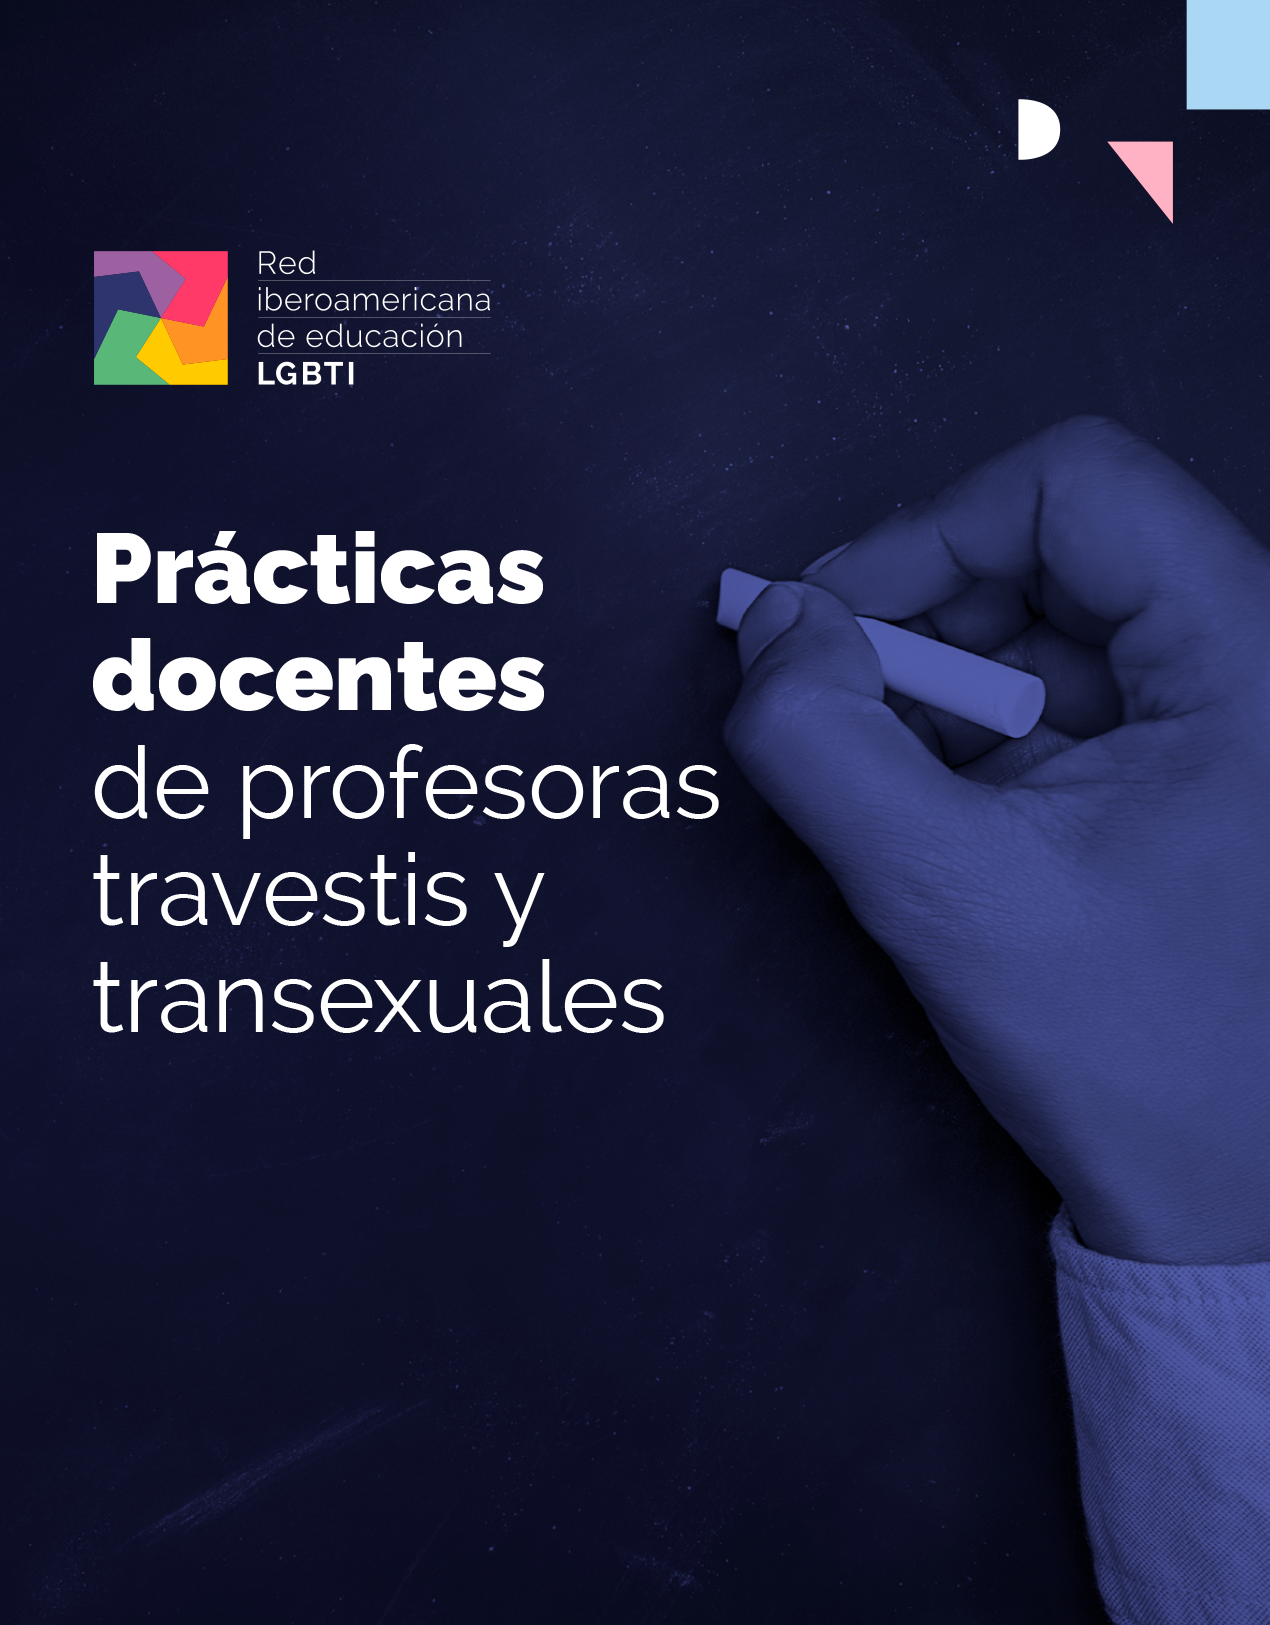 Portada de Prácticas docentes de profesoras travestis y transexuales. Imagen de una mano escribiendo en una pizarra